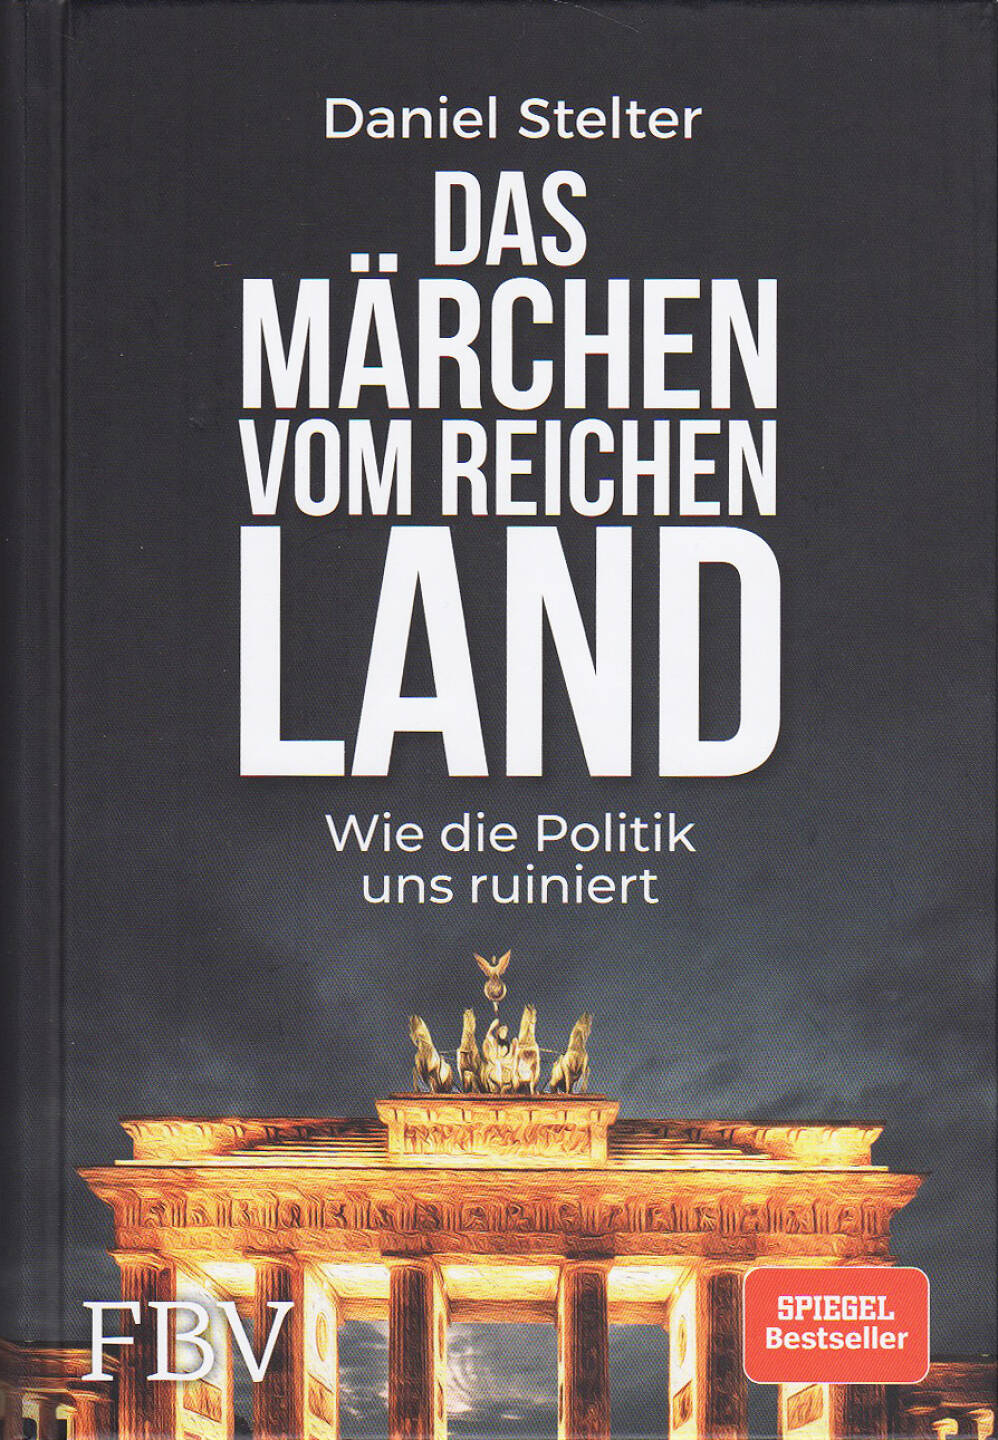 Daniel Stelter - Das Märchen vom reichen Land - https://boerse-social.com/financebooks/show/daniel_stelter_-_das_marchen_vom_reichen_land